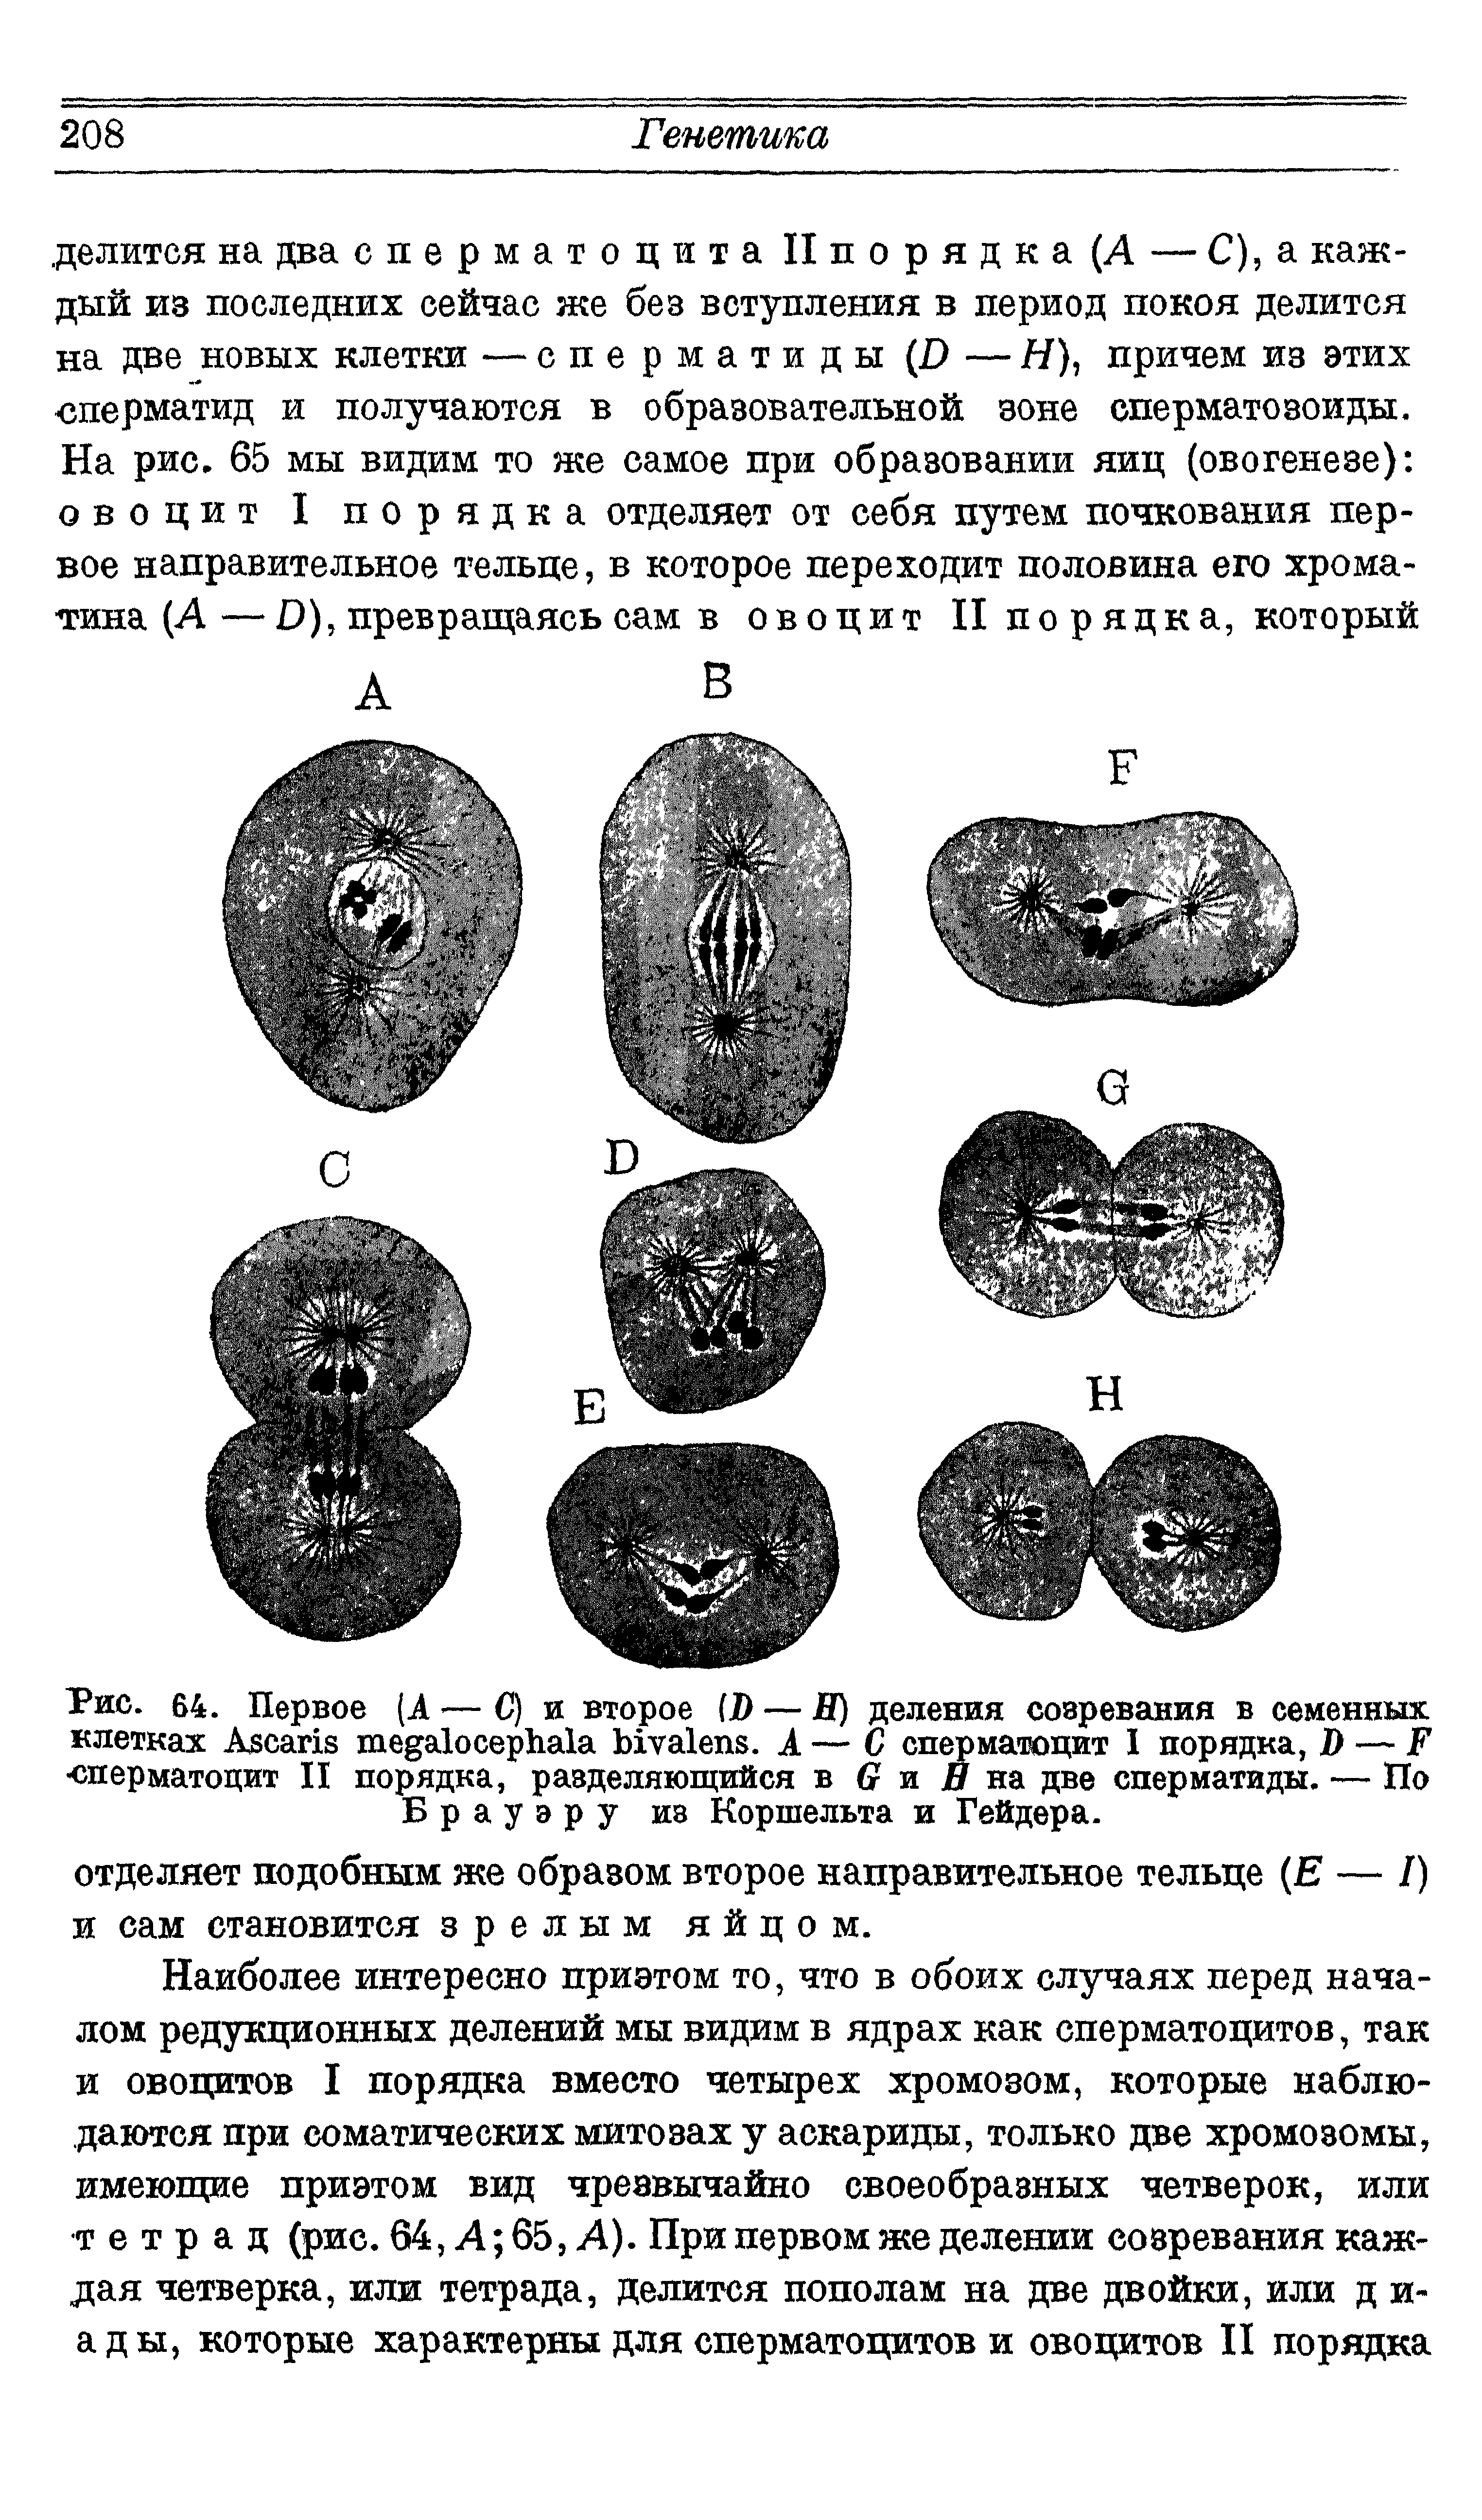 Рис. 64. Первое (А — С) и второе (D — Я) деления созревания в семенных клетках A . А — С сперматоцит I порядка, Я — F сперматоцит И порядка, разделяющийся в G и на две сперматиды. — По Брауэру иэ Коршельта и Гейдера.